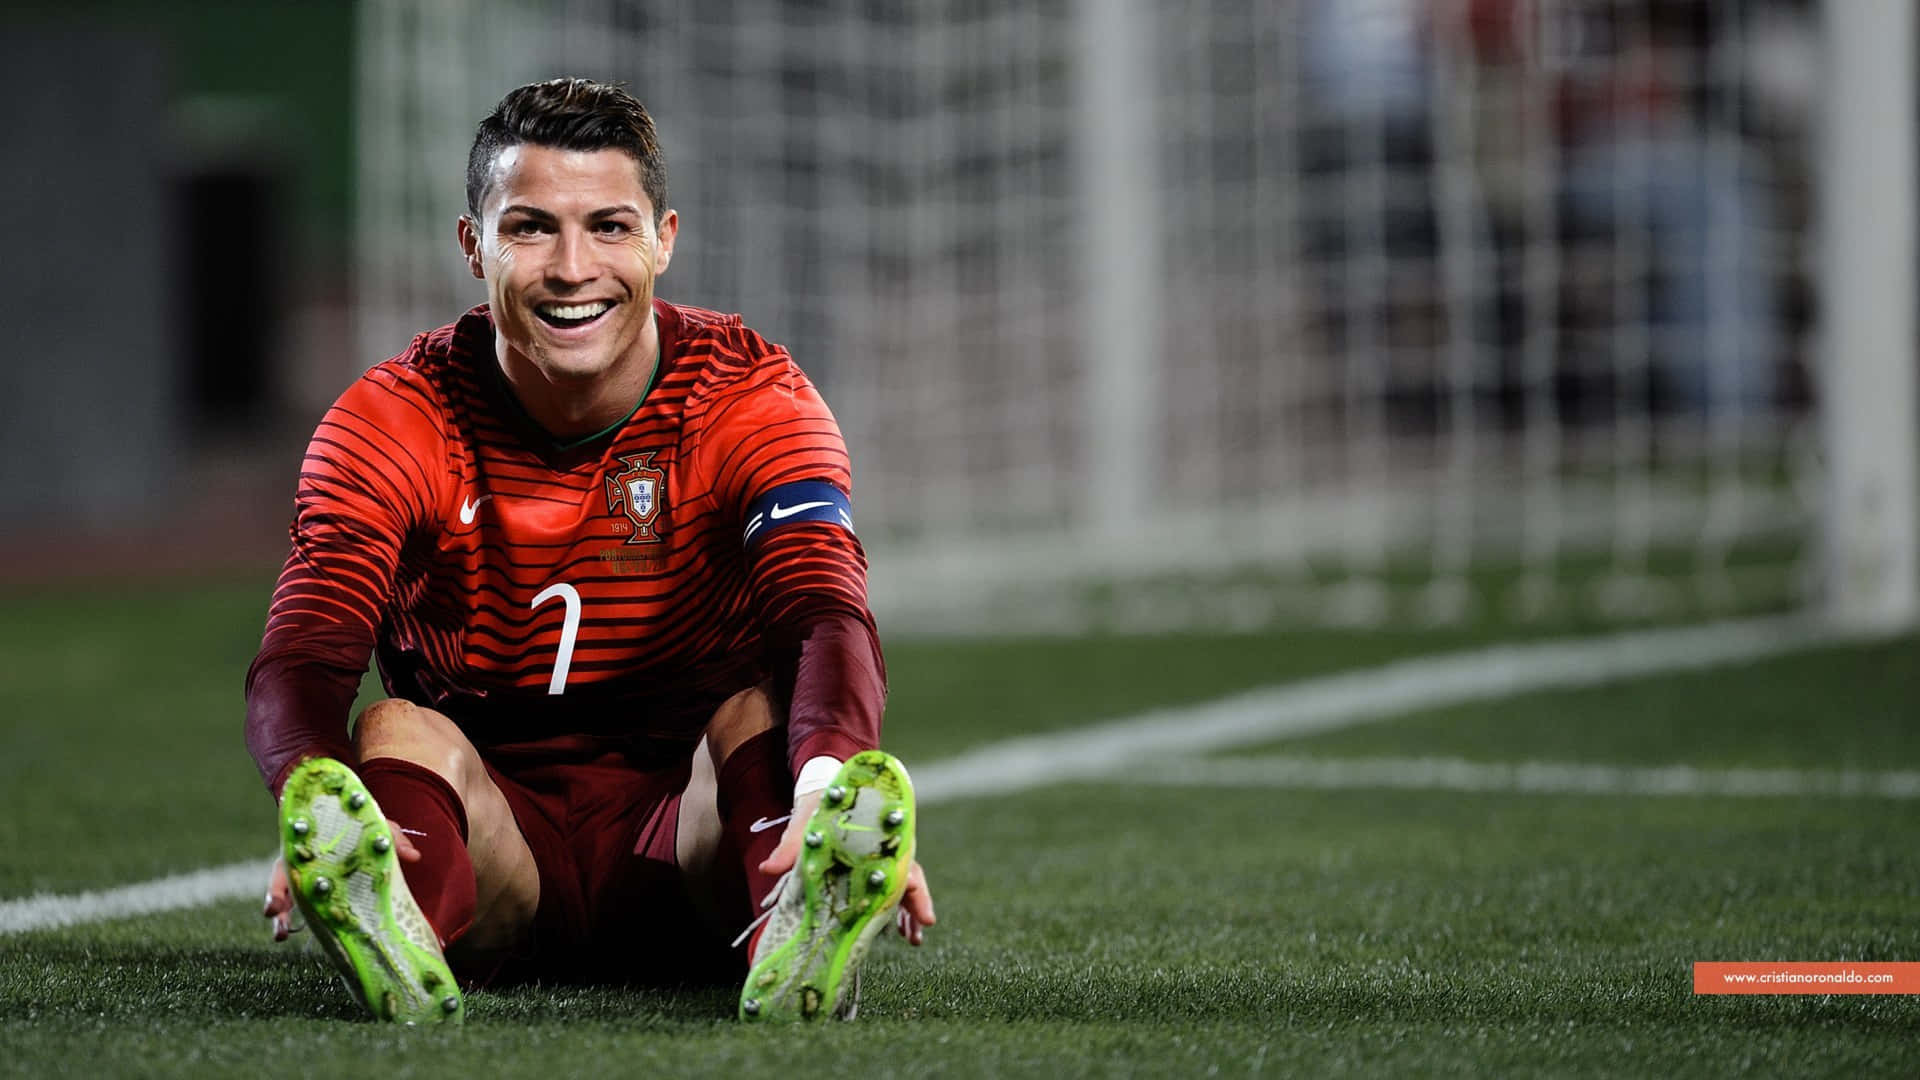 Fodboldspiller Cristiano Ronaldo Spilbillede Tapet